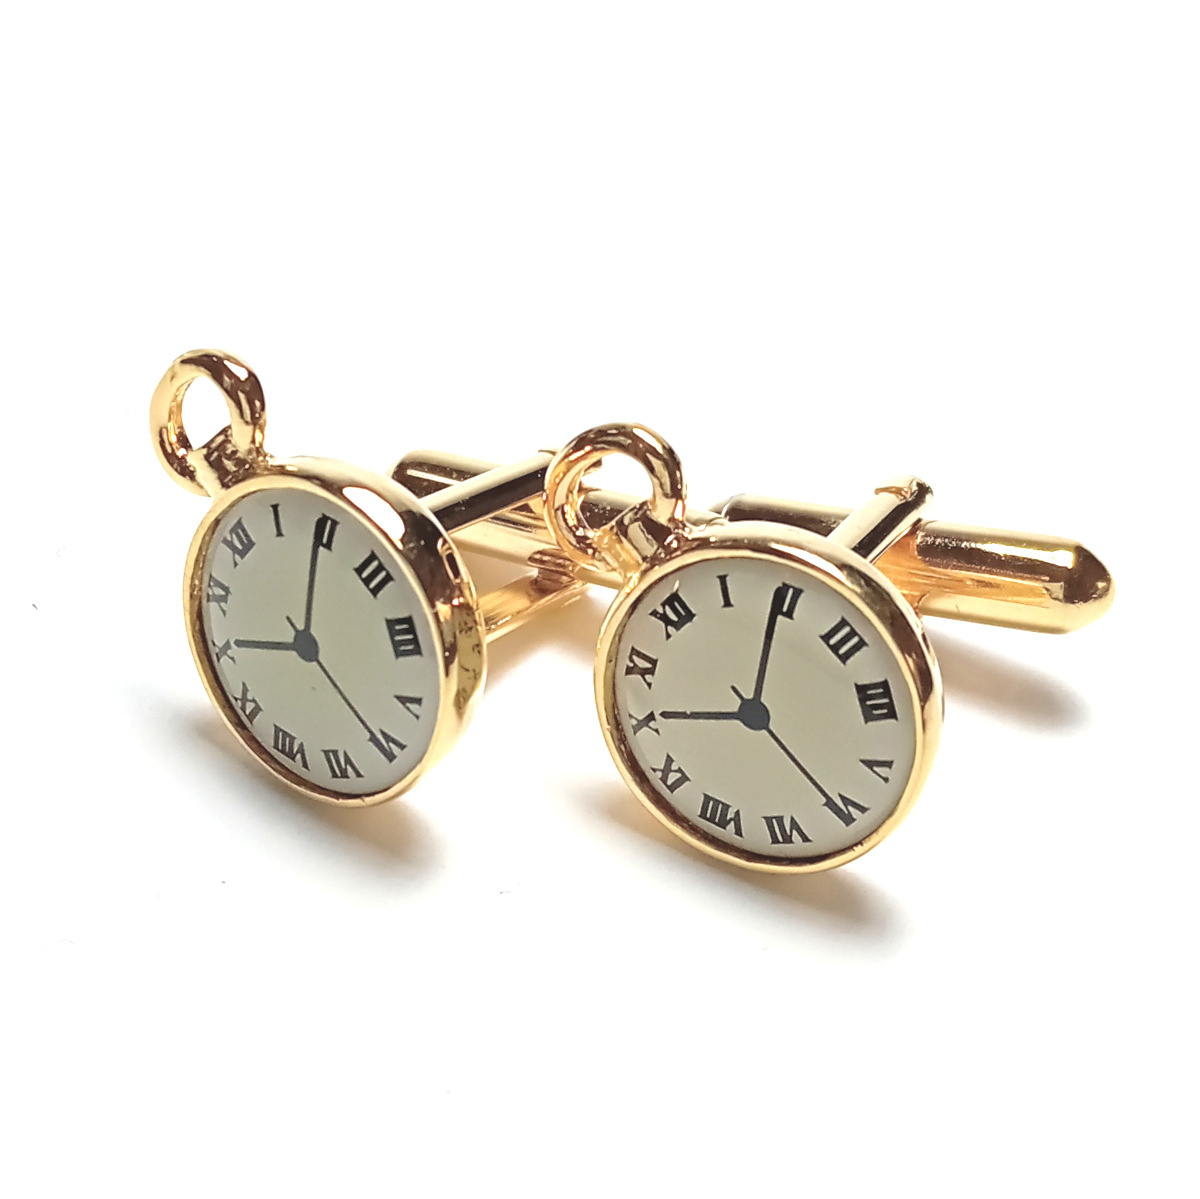 [swc14] новый товар SWANKs one k запонки кафф links часы узор Gold × белый карманные часы 